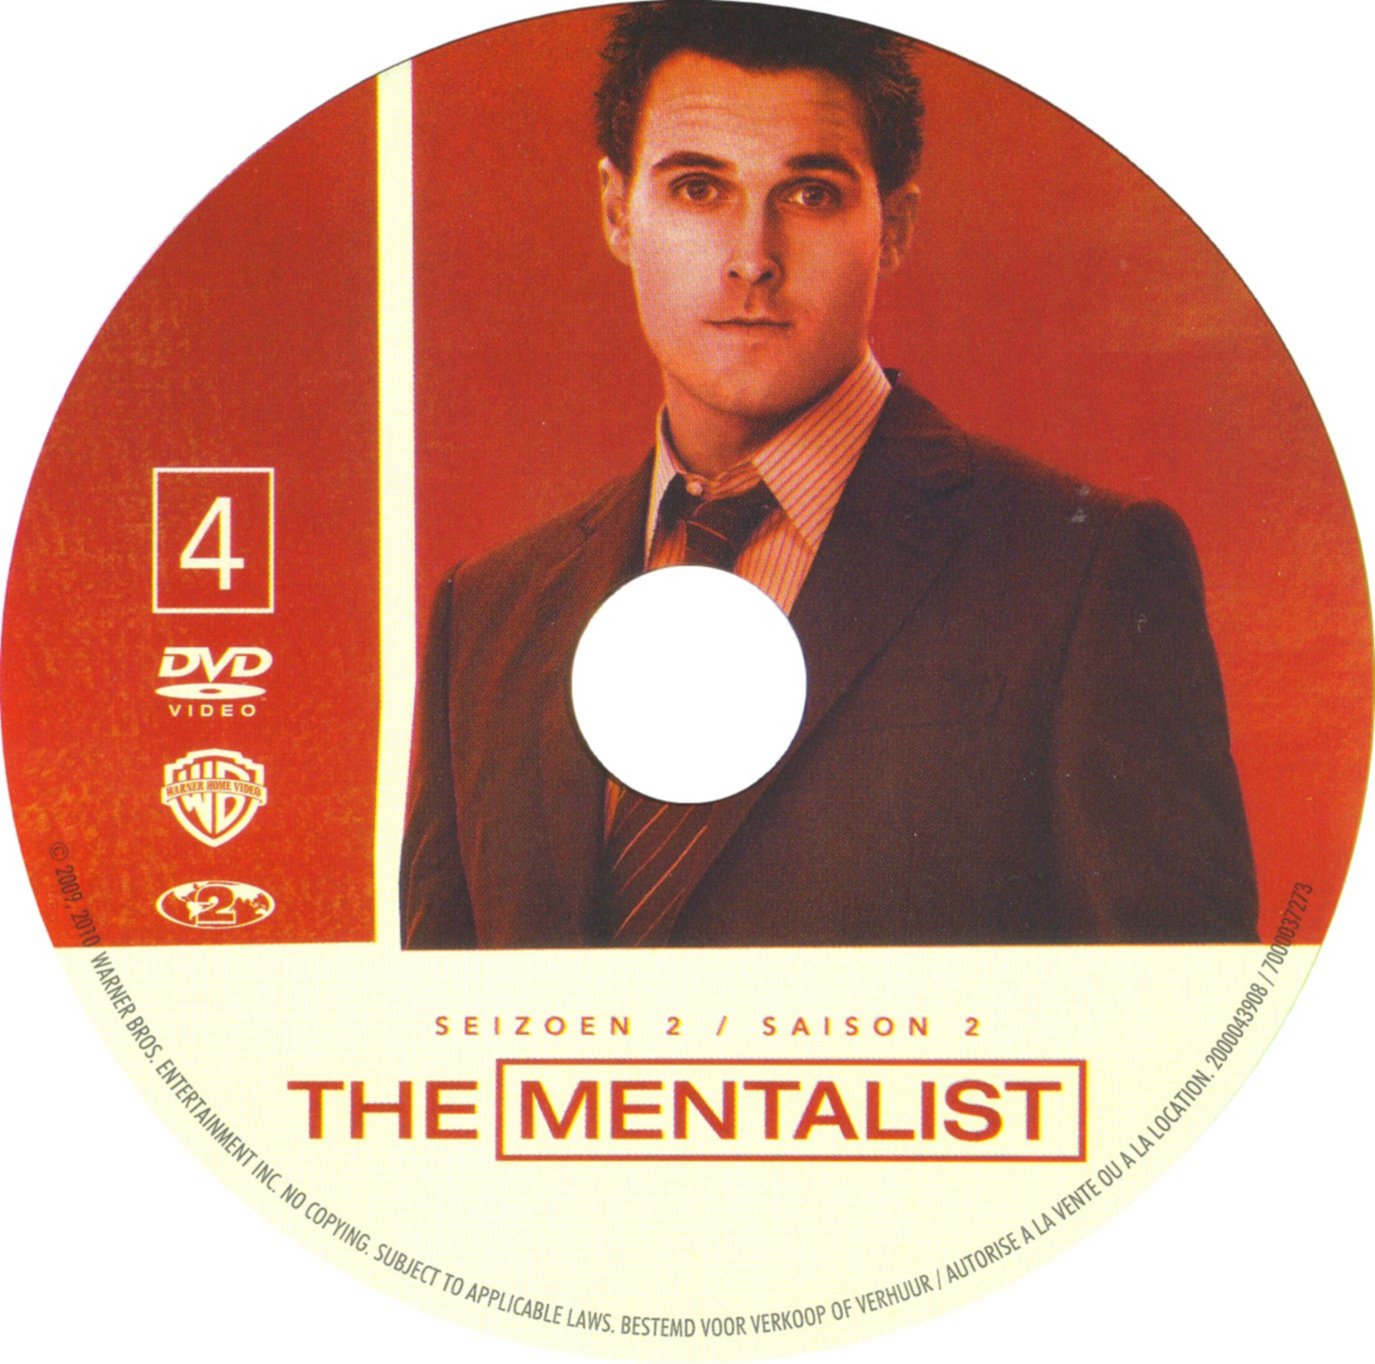 The mentalist Saison 2 DISC 4